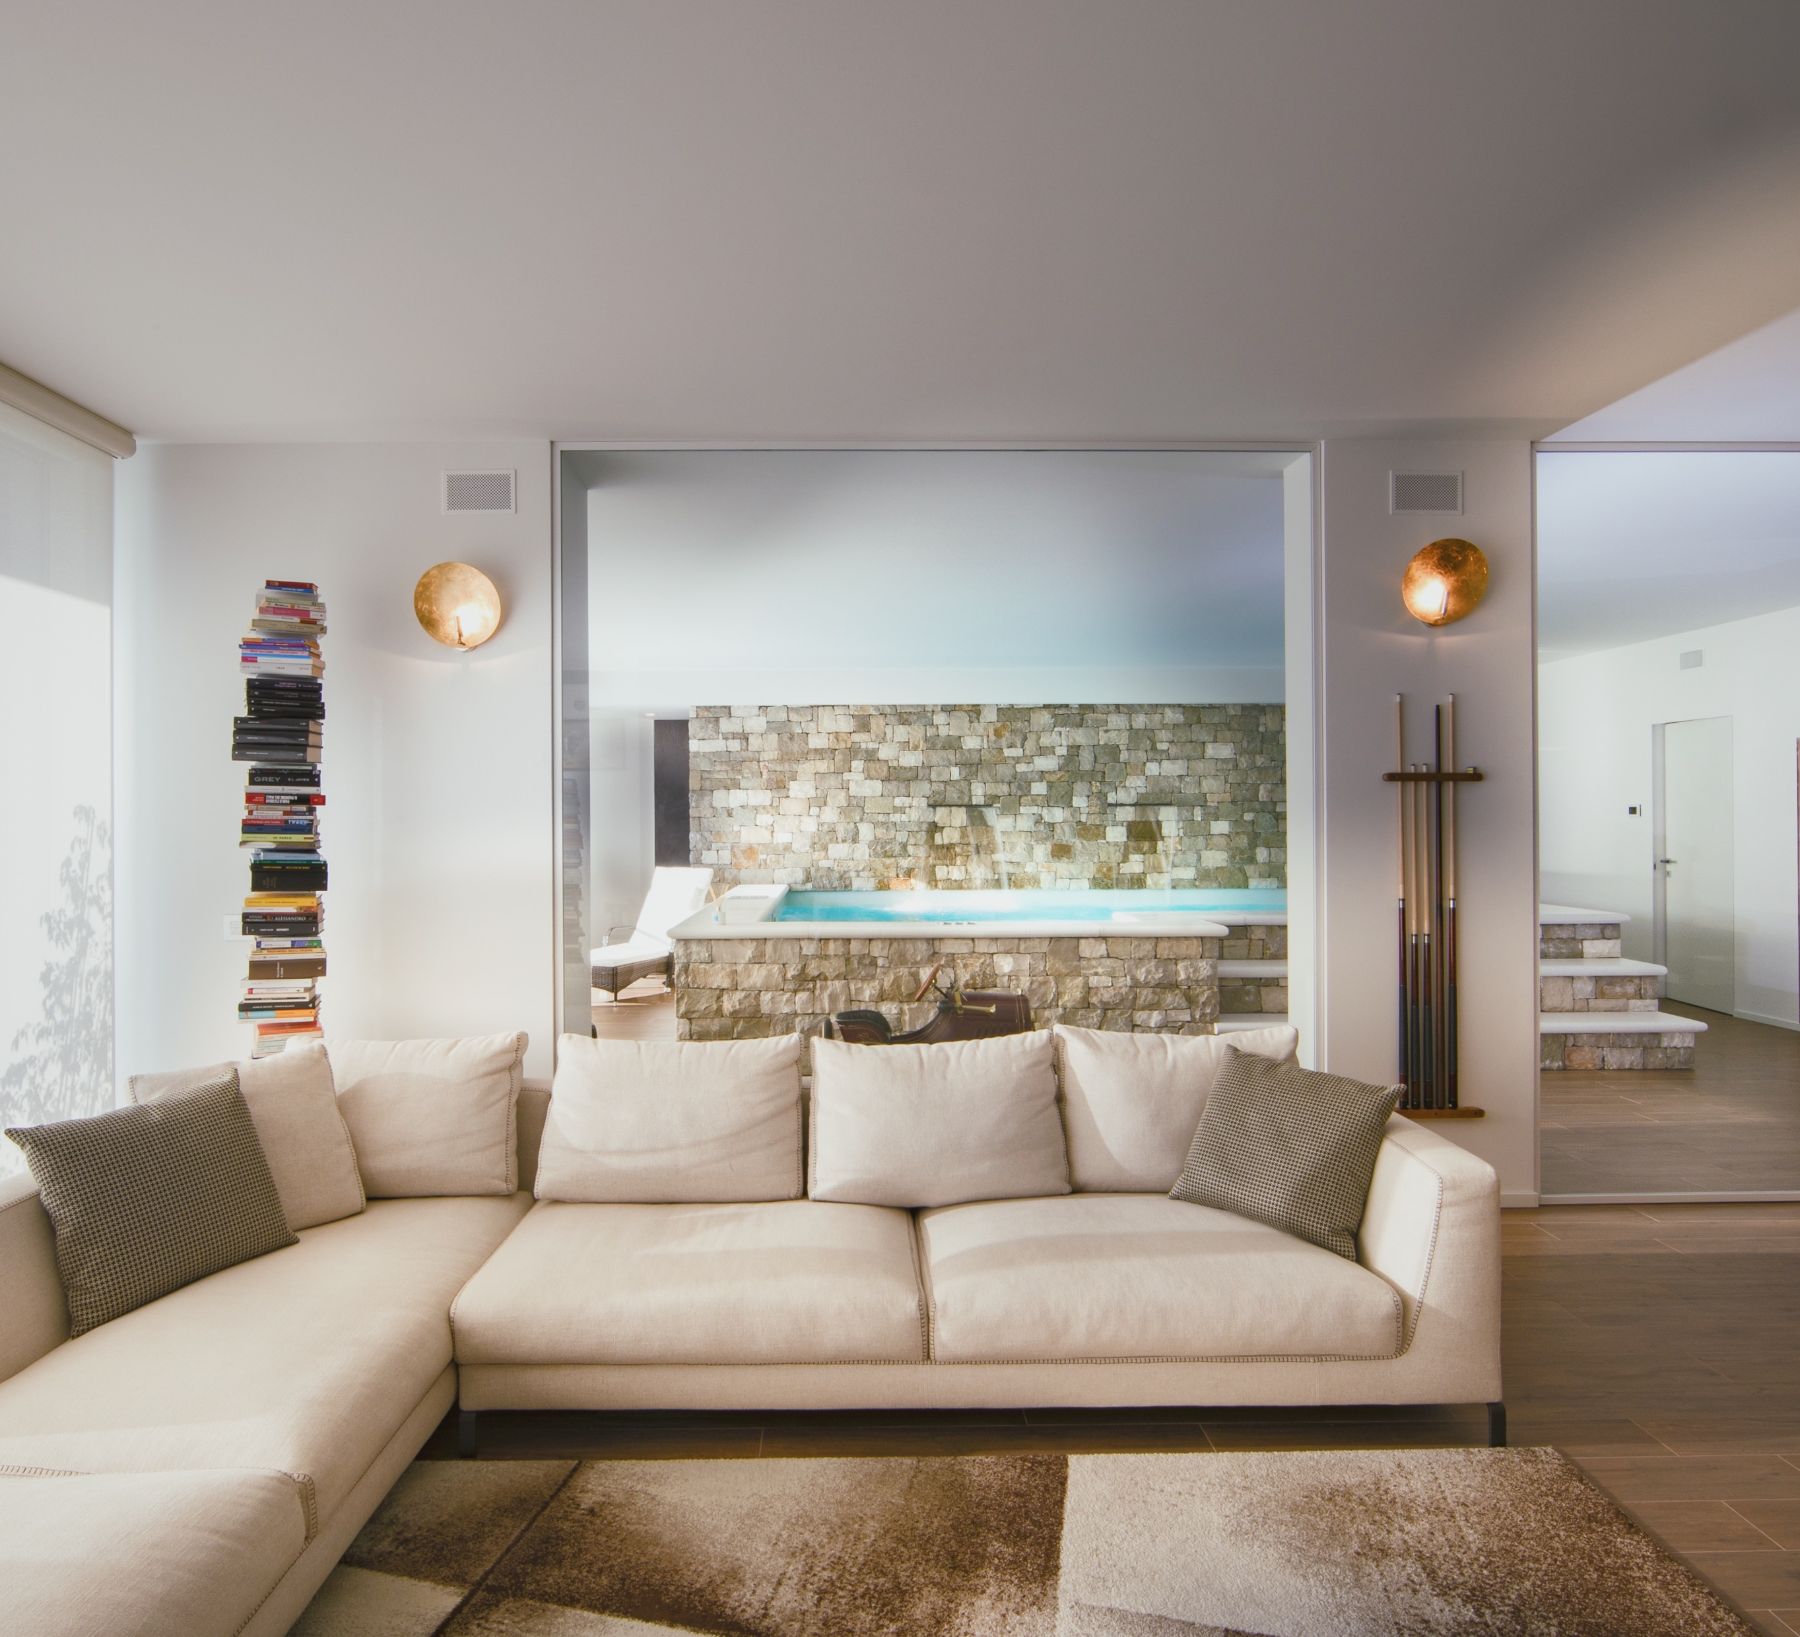 Villa a Robbiate, Progetto di interni, 200mq

Cliente privato, 2016